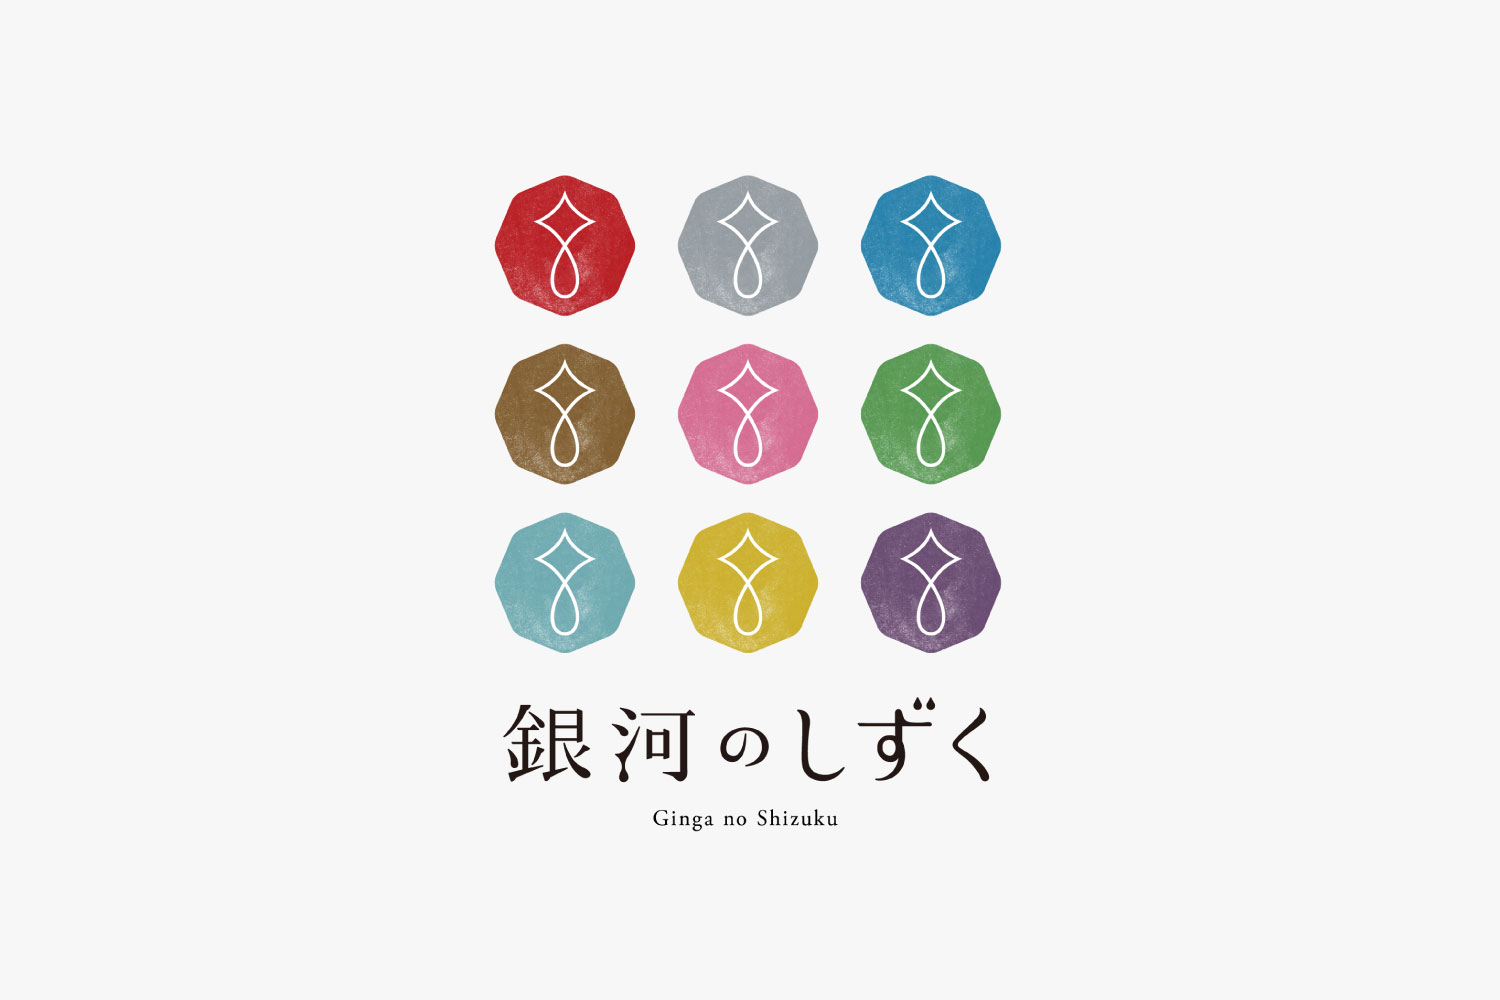 Ginga no Sizuku Logomark